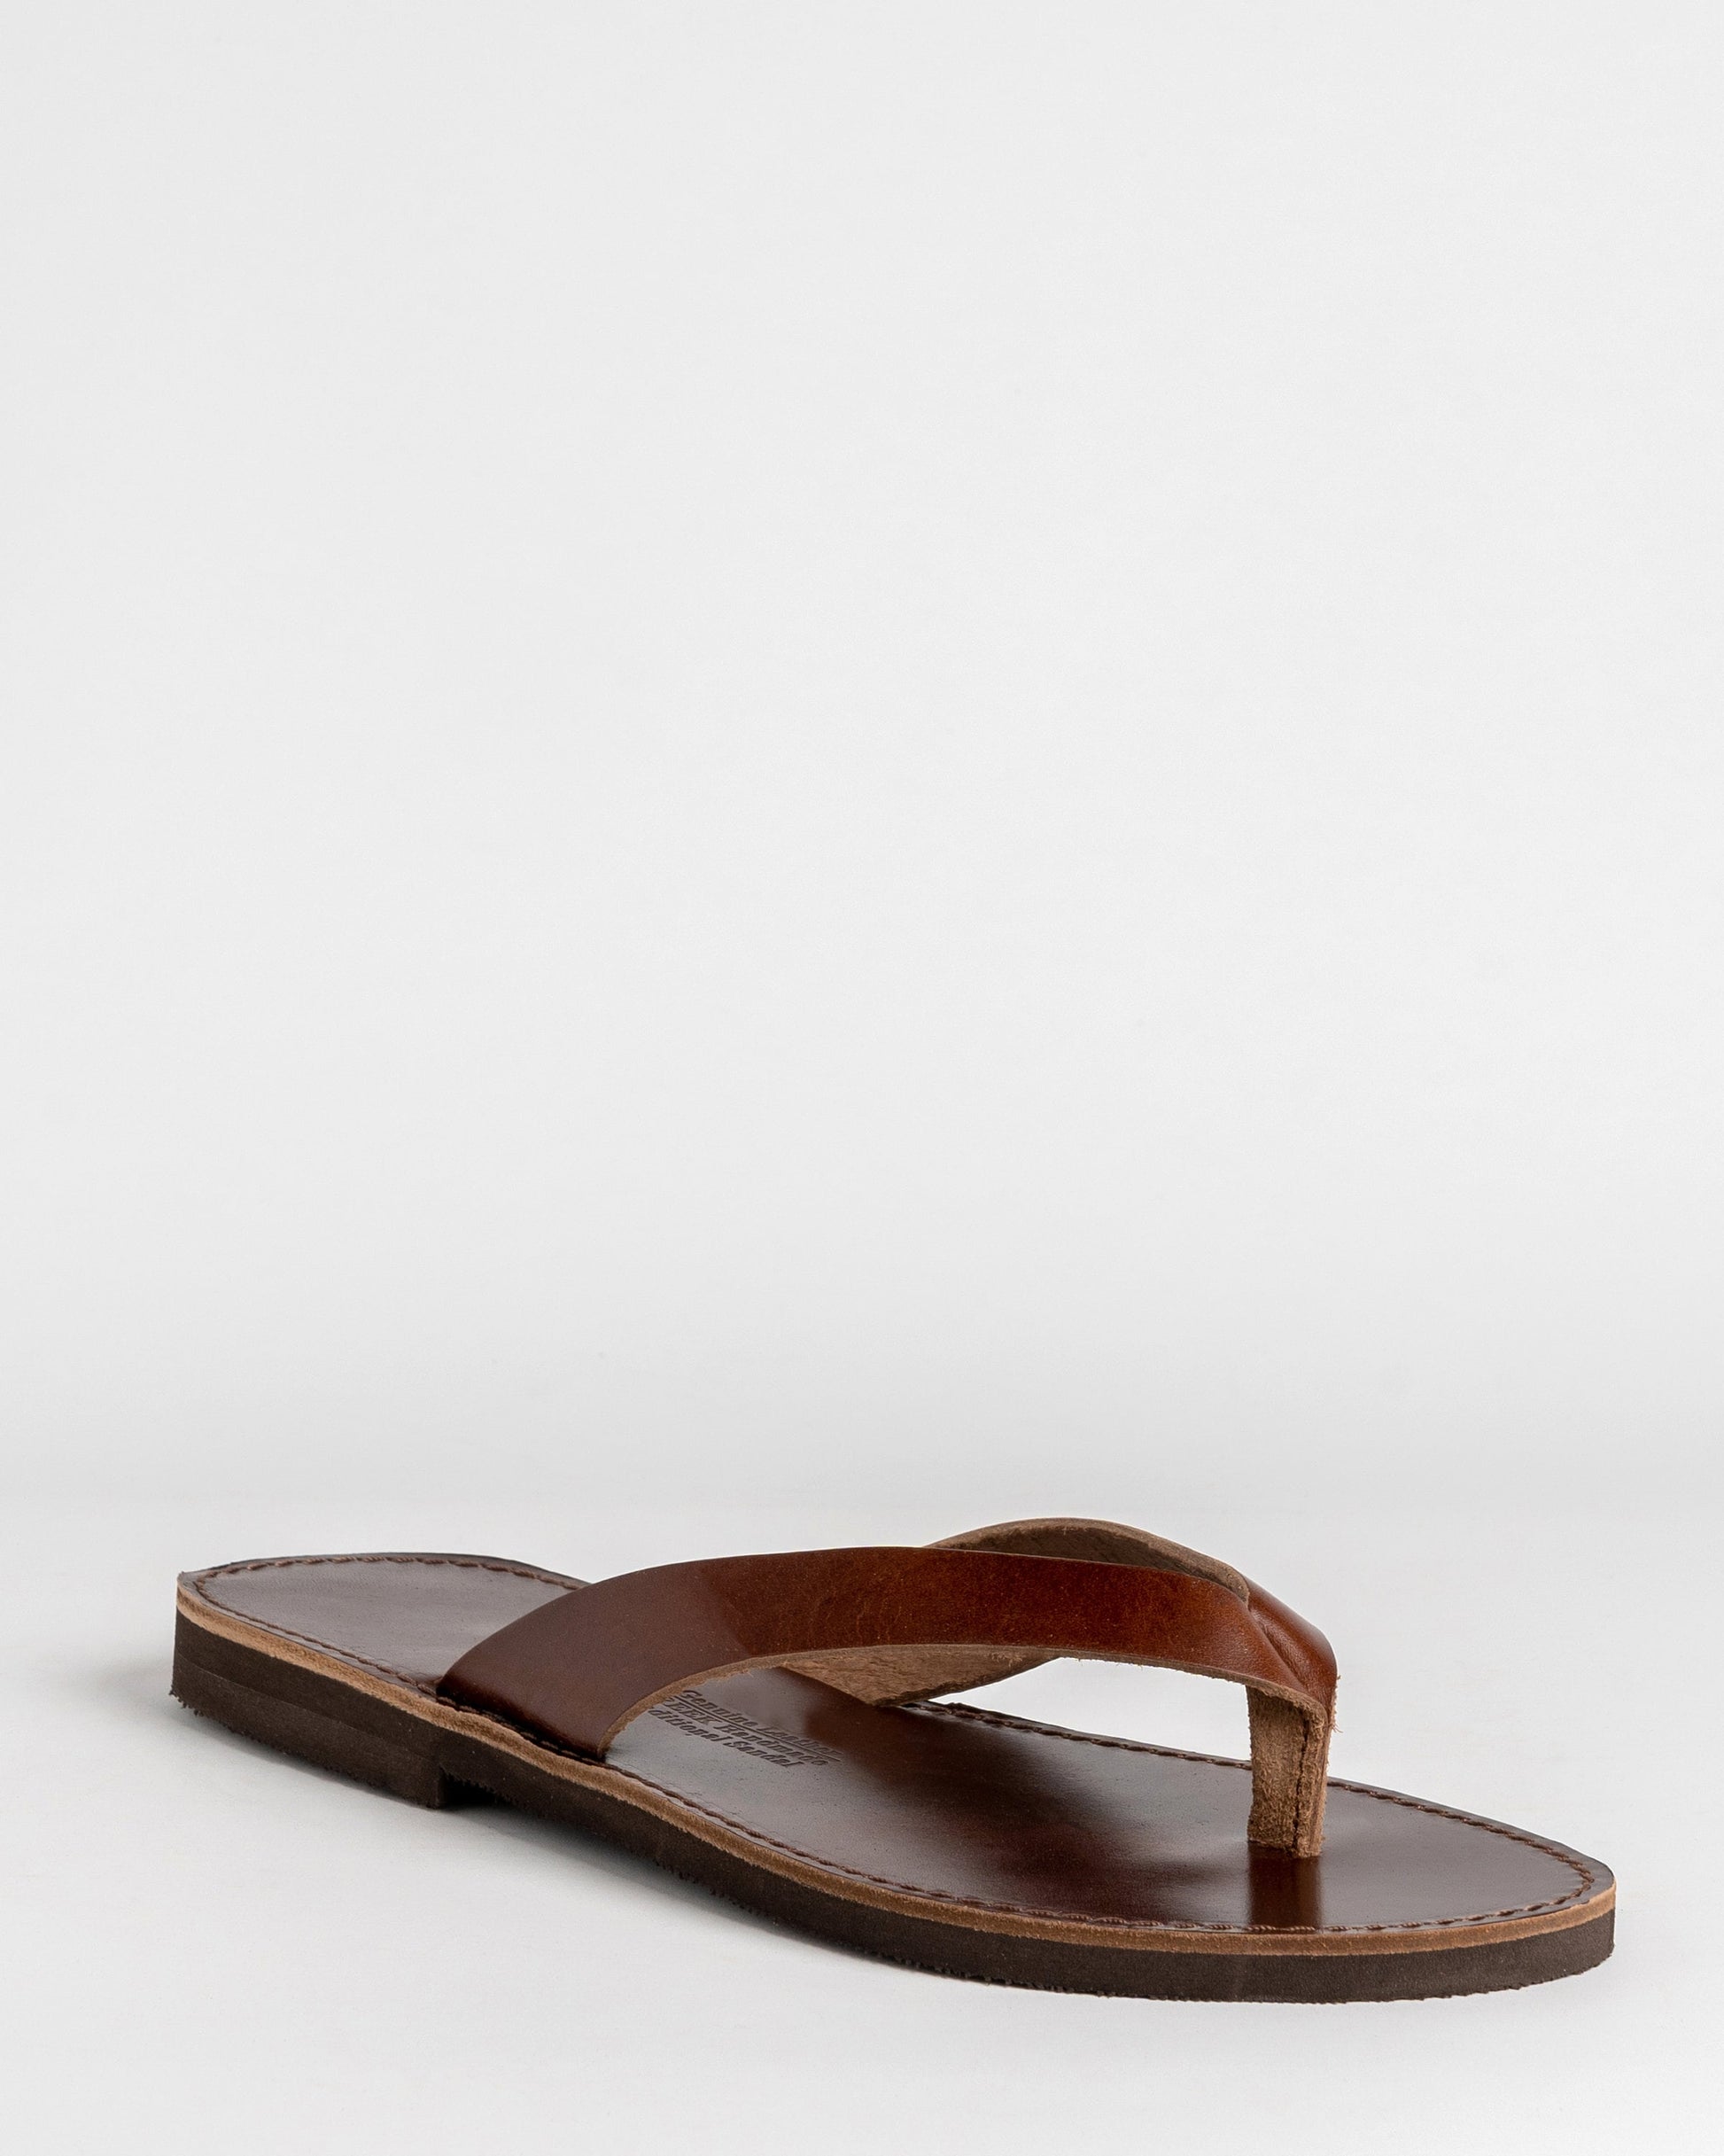 Flip flops mens leather sandals, Greek natural leather sandals , Barefoot thong leather sandals, Minimalist flat summer sandals